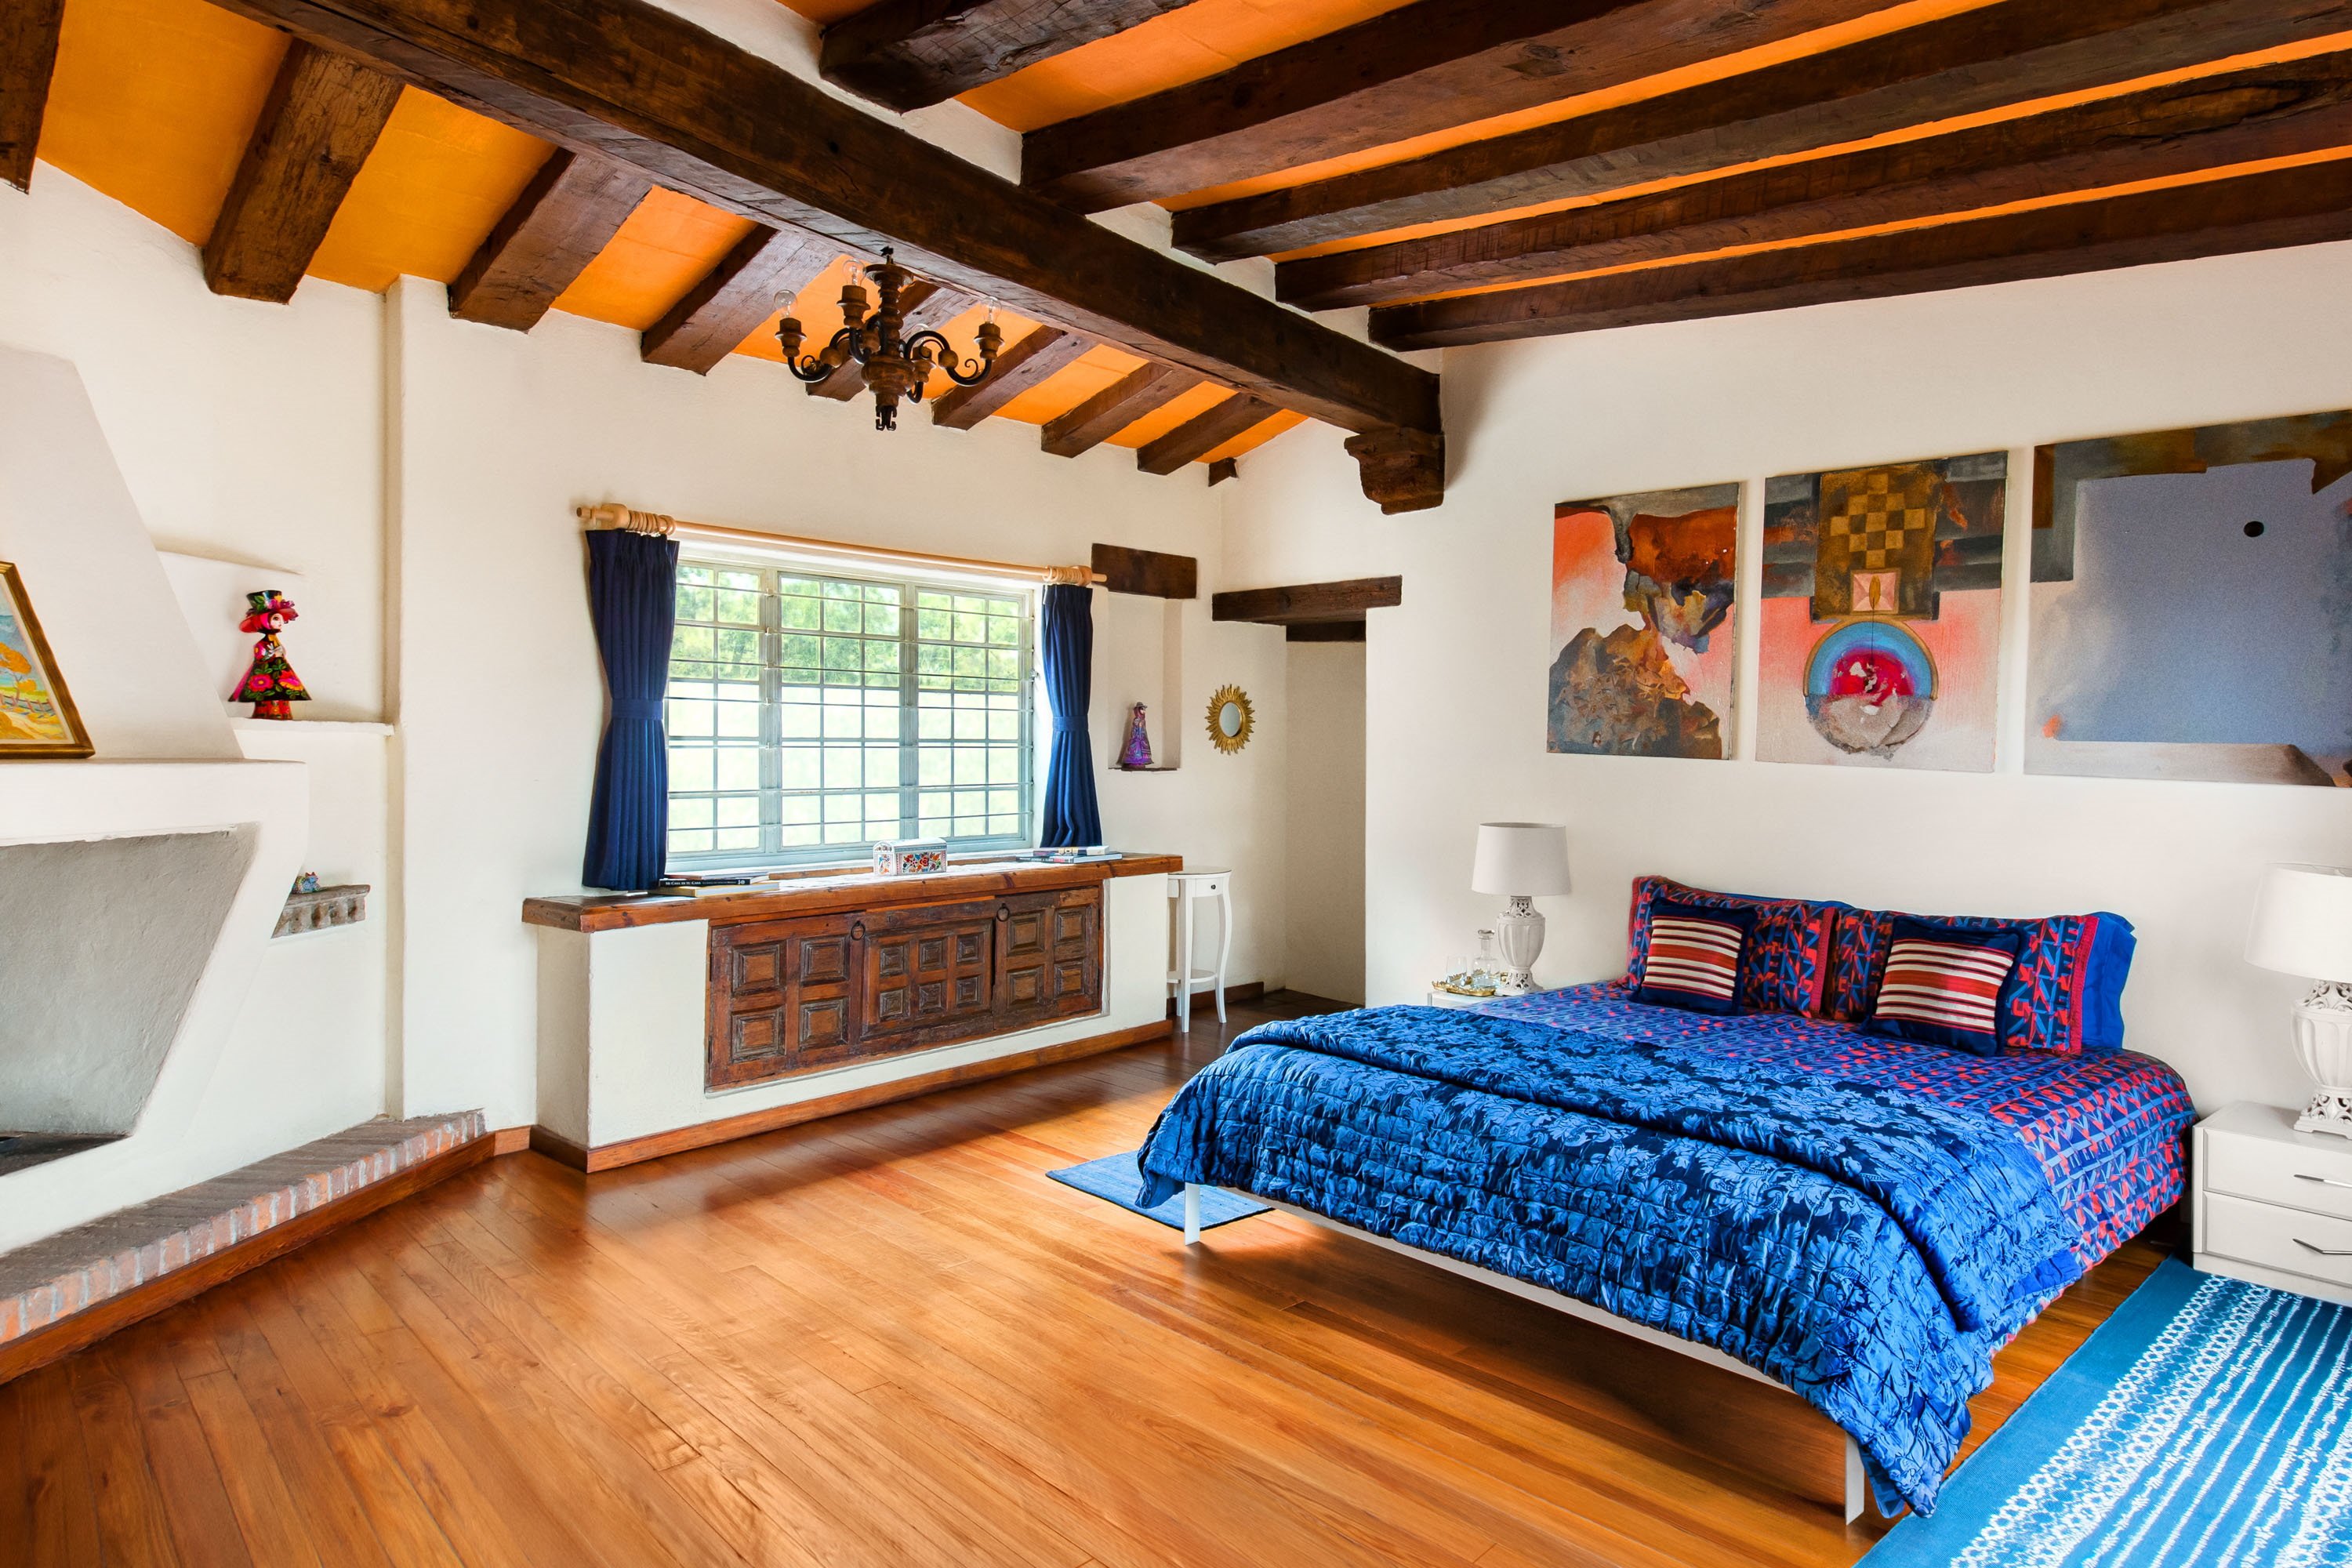 Airbnb potencia el alquiler de habitaciones y añade un activo más al mercado turístico e inmobiliario